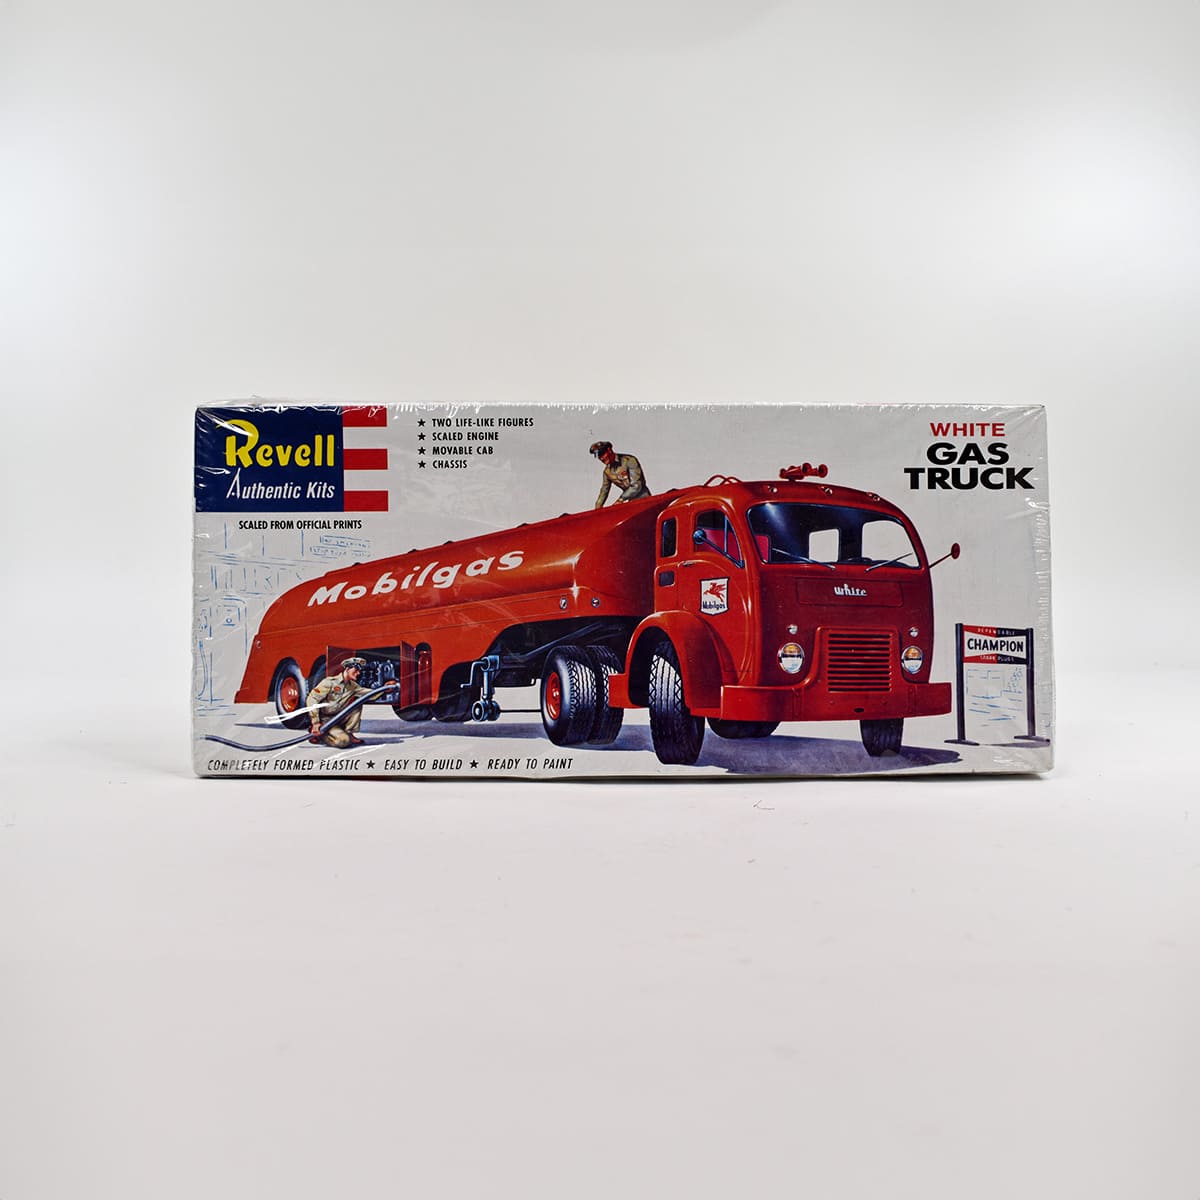 Revell Mobilgas Truck Plastic Model Kit 1995 No. 1420